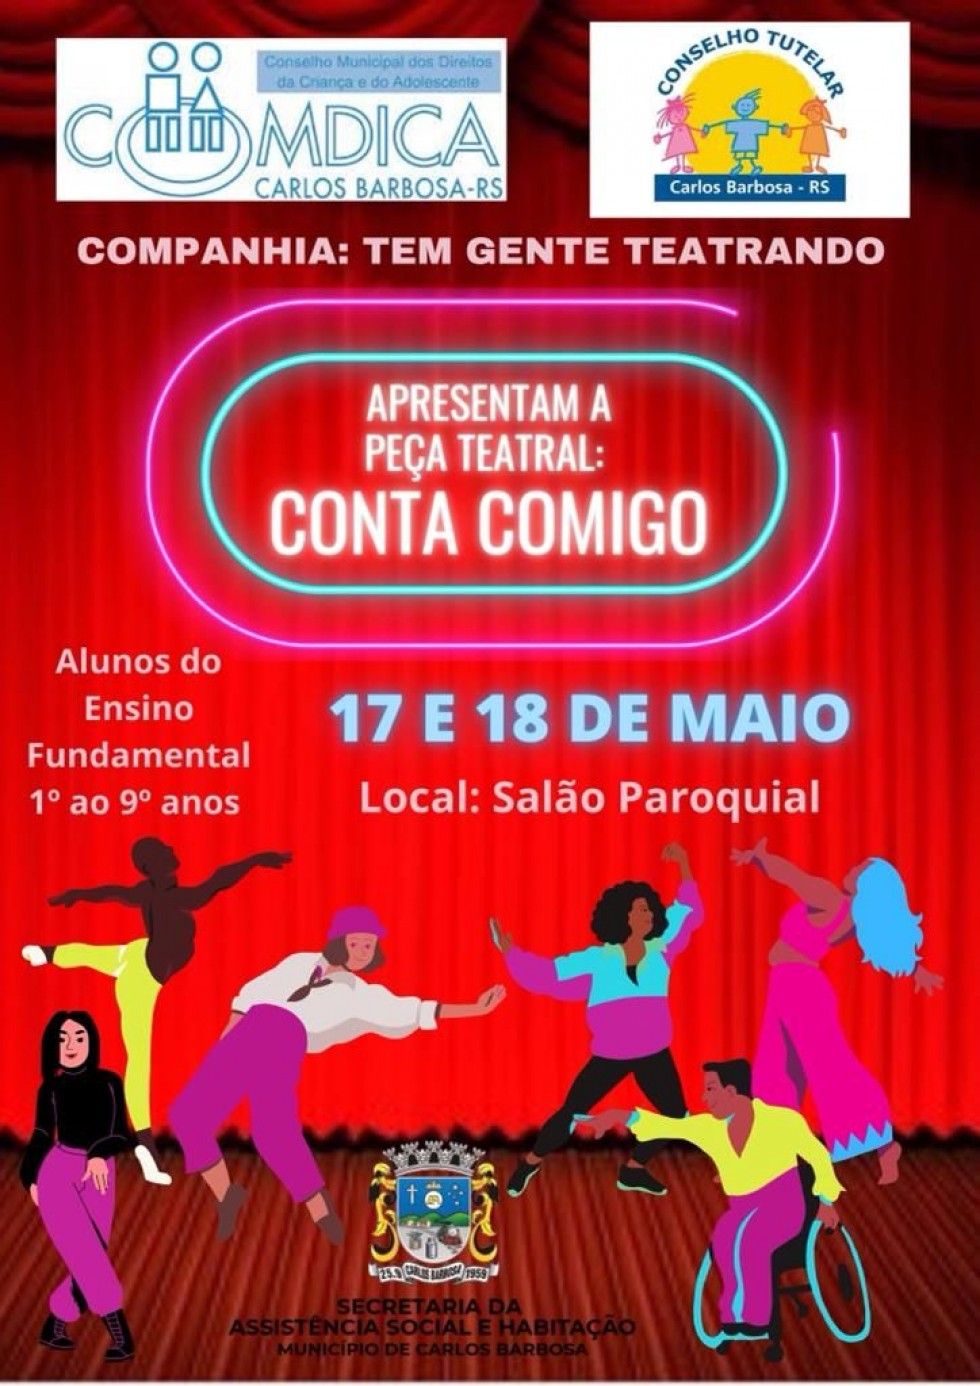 Conselho Tutelar de Carlos Barbosa promove peça teatral em alusão ao Dia 18 de maio